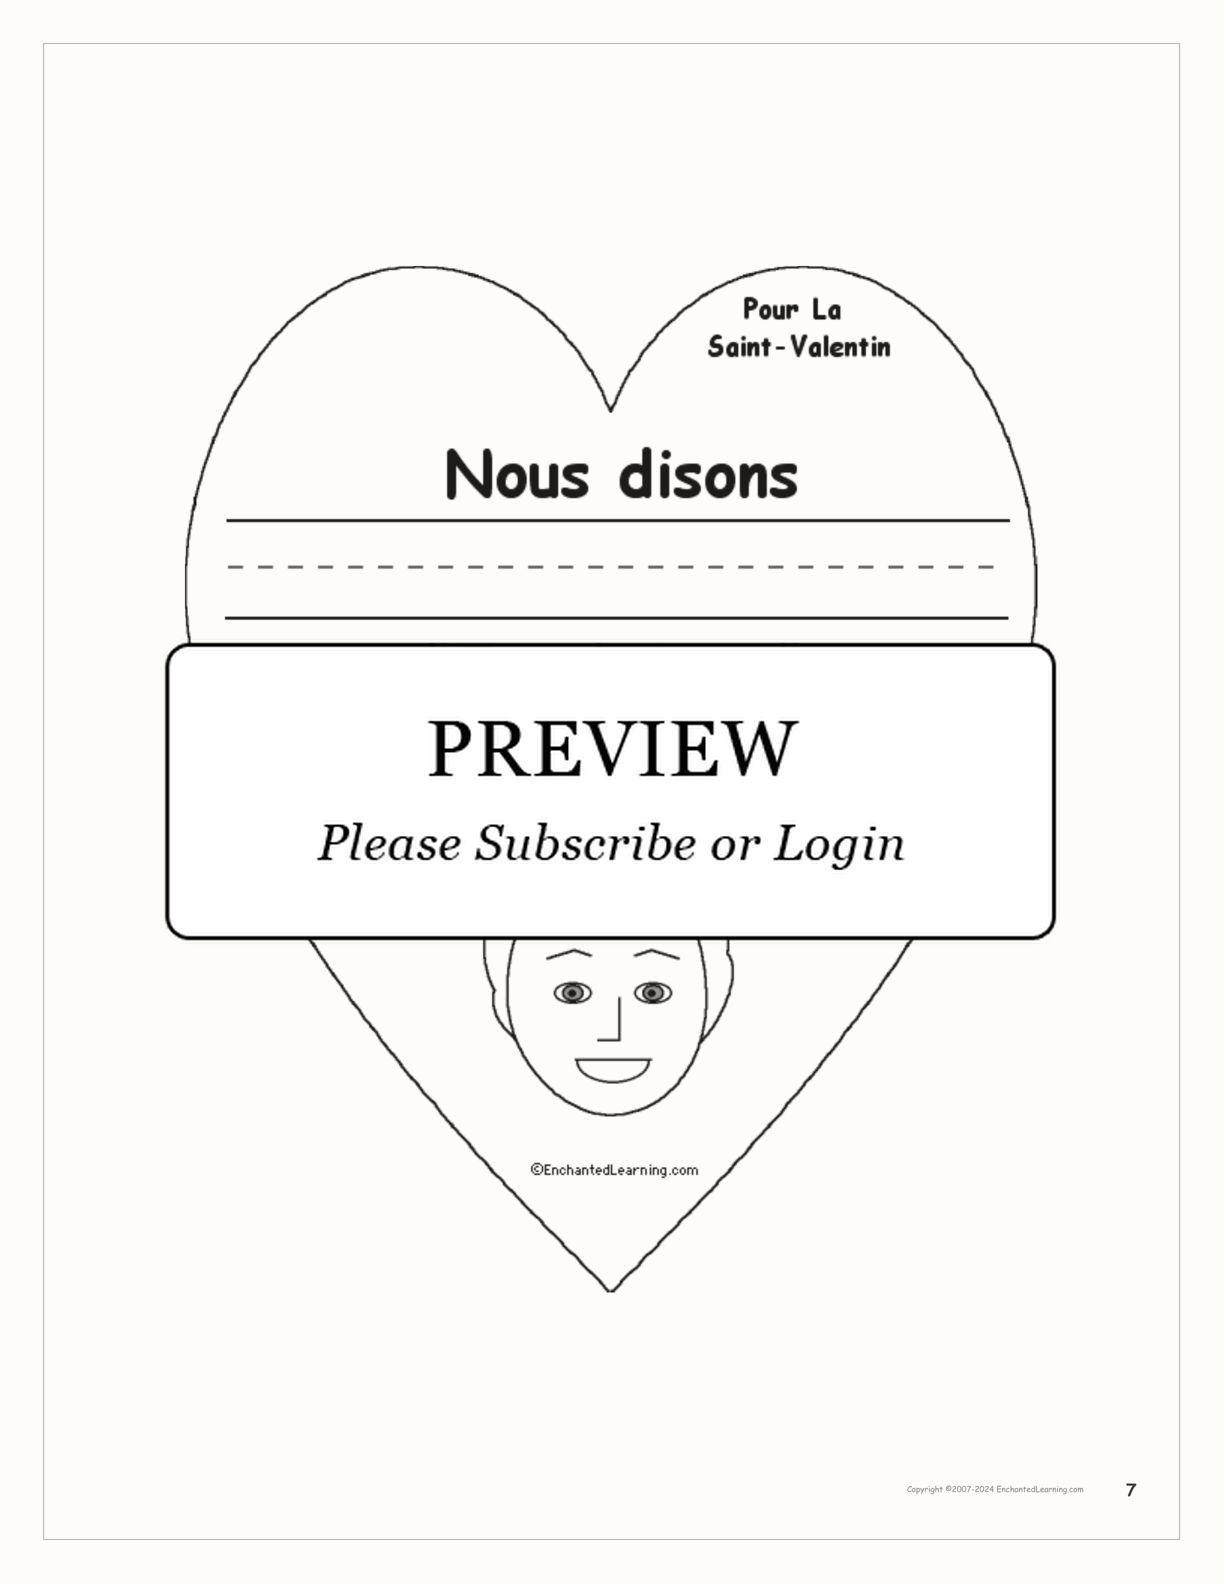 Pour la Saint-Valentin interactive worksheet page 7